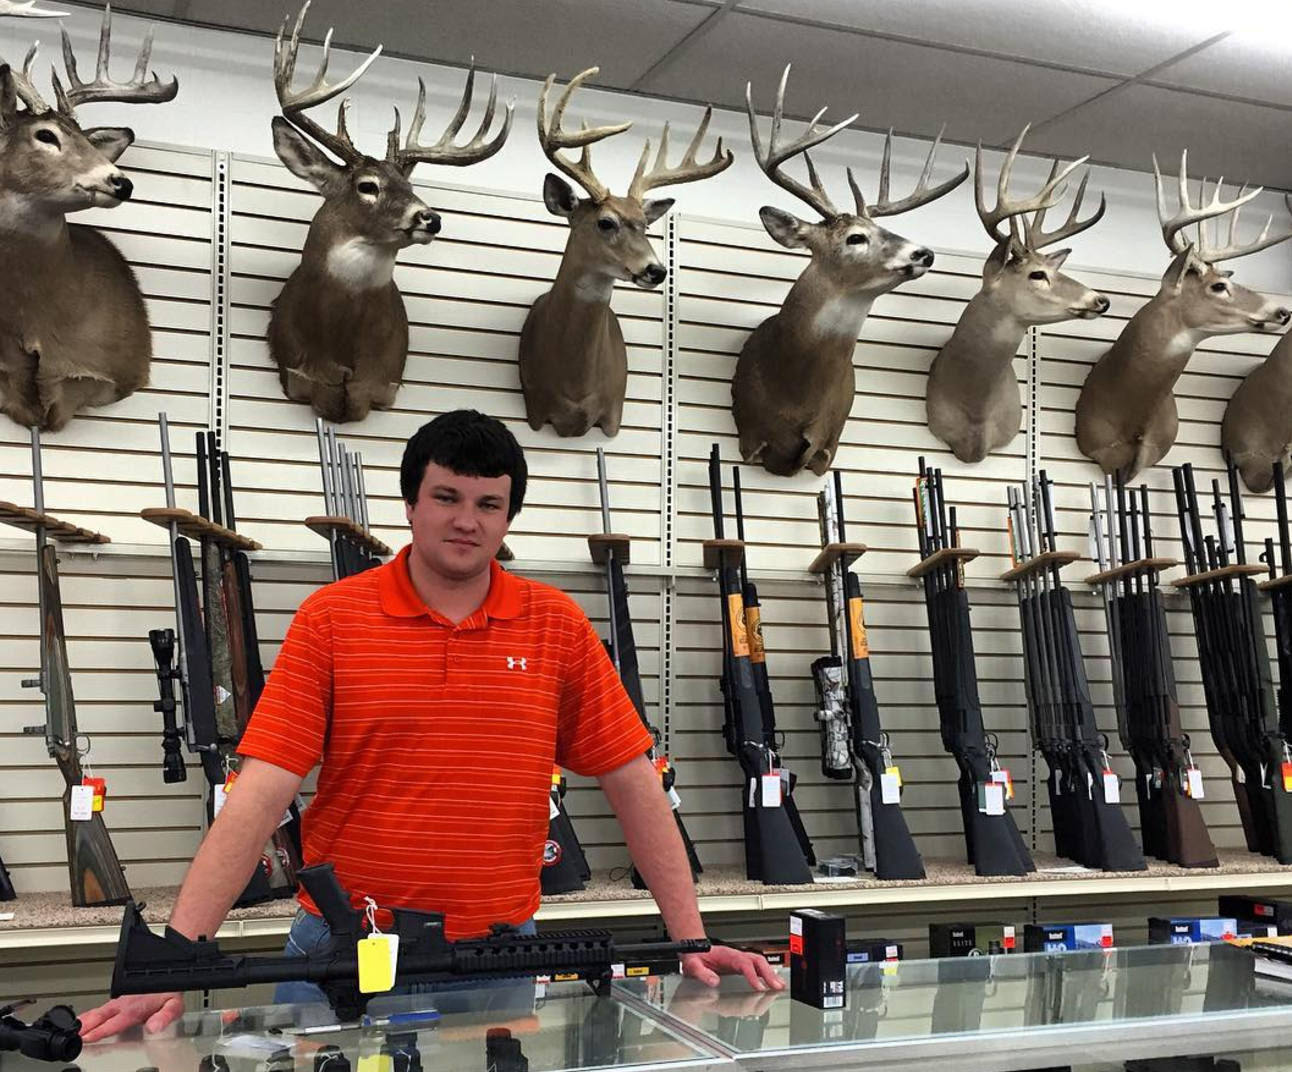 small town gun store clerk